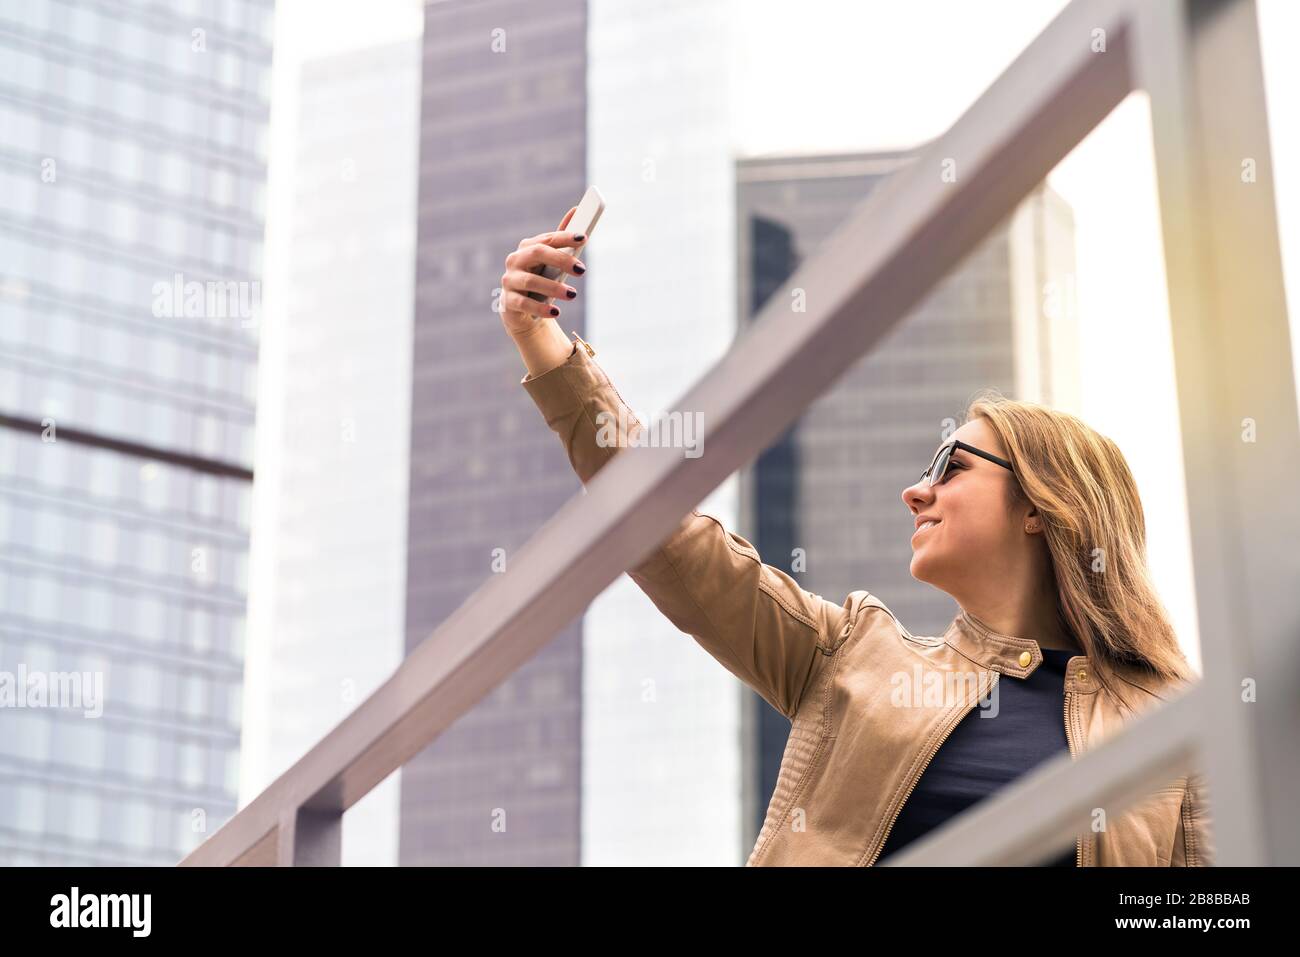 Giovane donna felice che prende selfie in città strada. Donna sorridente che scatta una foto di se stessa con la fotocamera per smartphone. Fotografia per telefono cellulare. Foto Stock